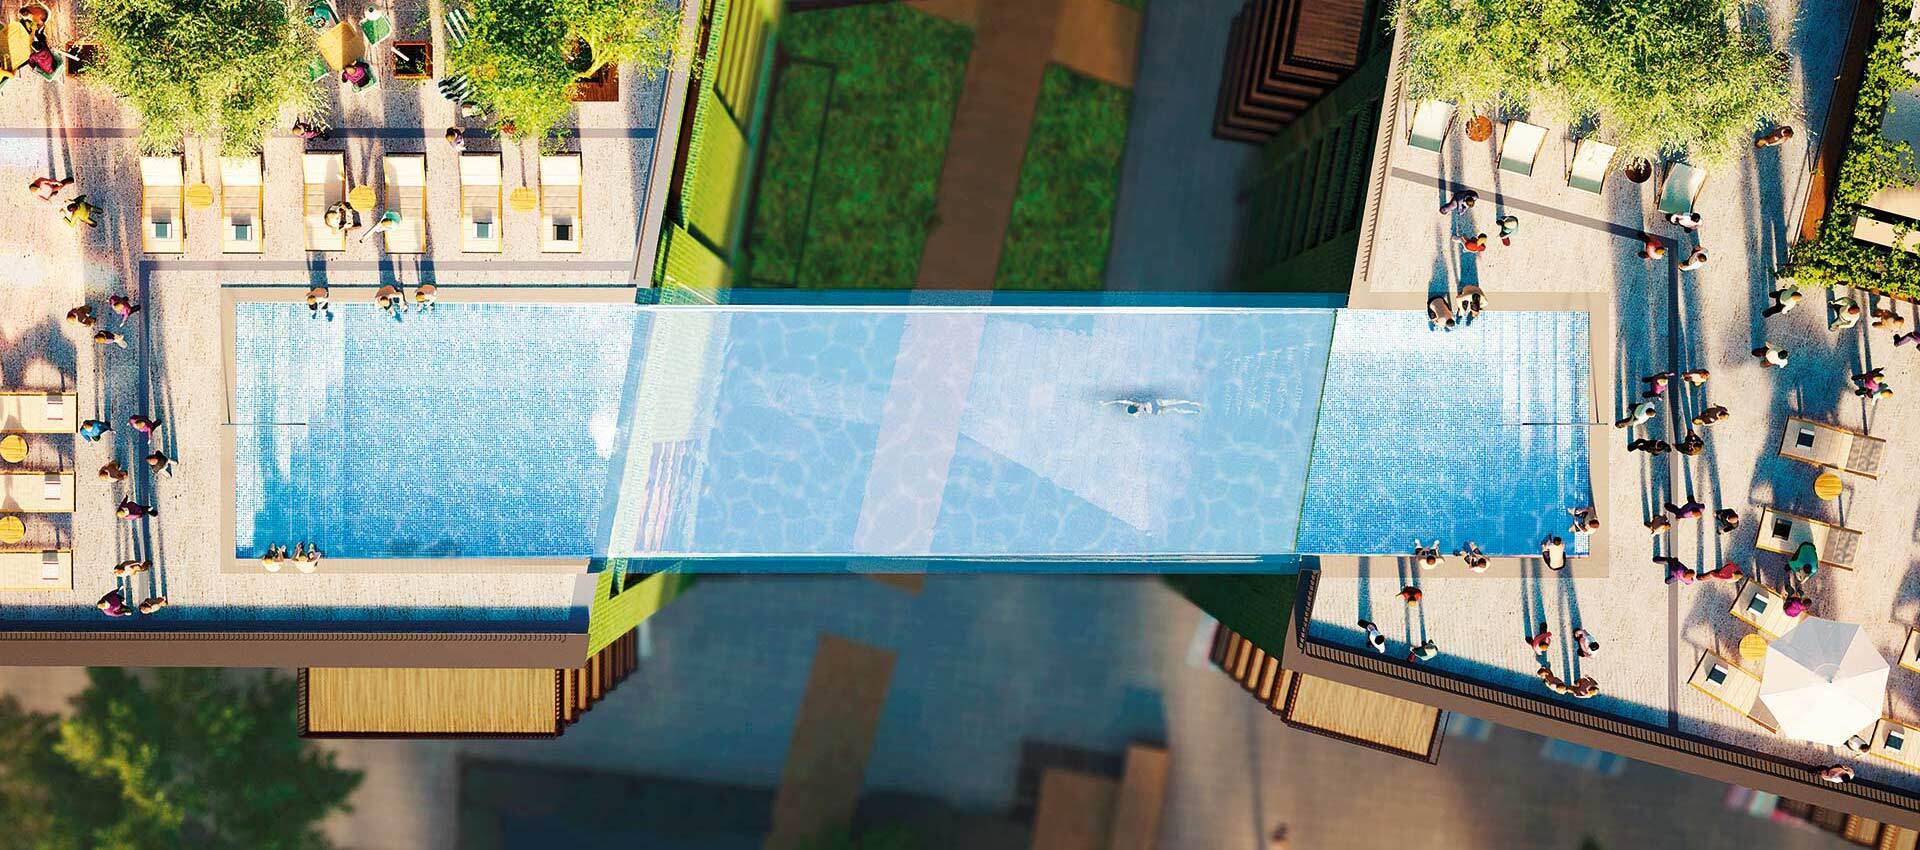 Londres ganha piscina transparente suspensa liga prédios de luxo